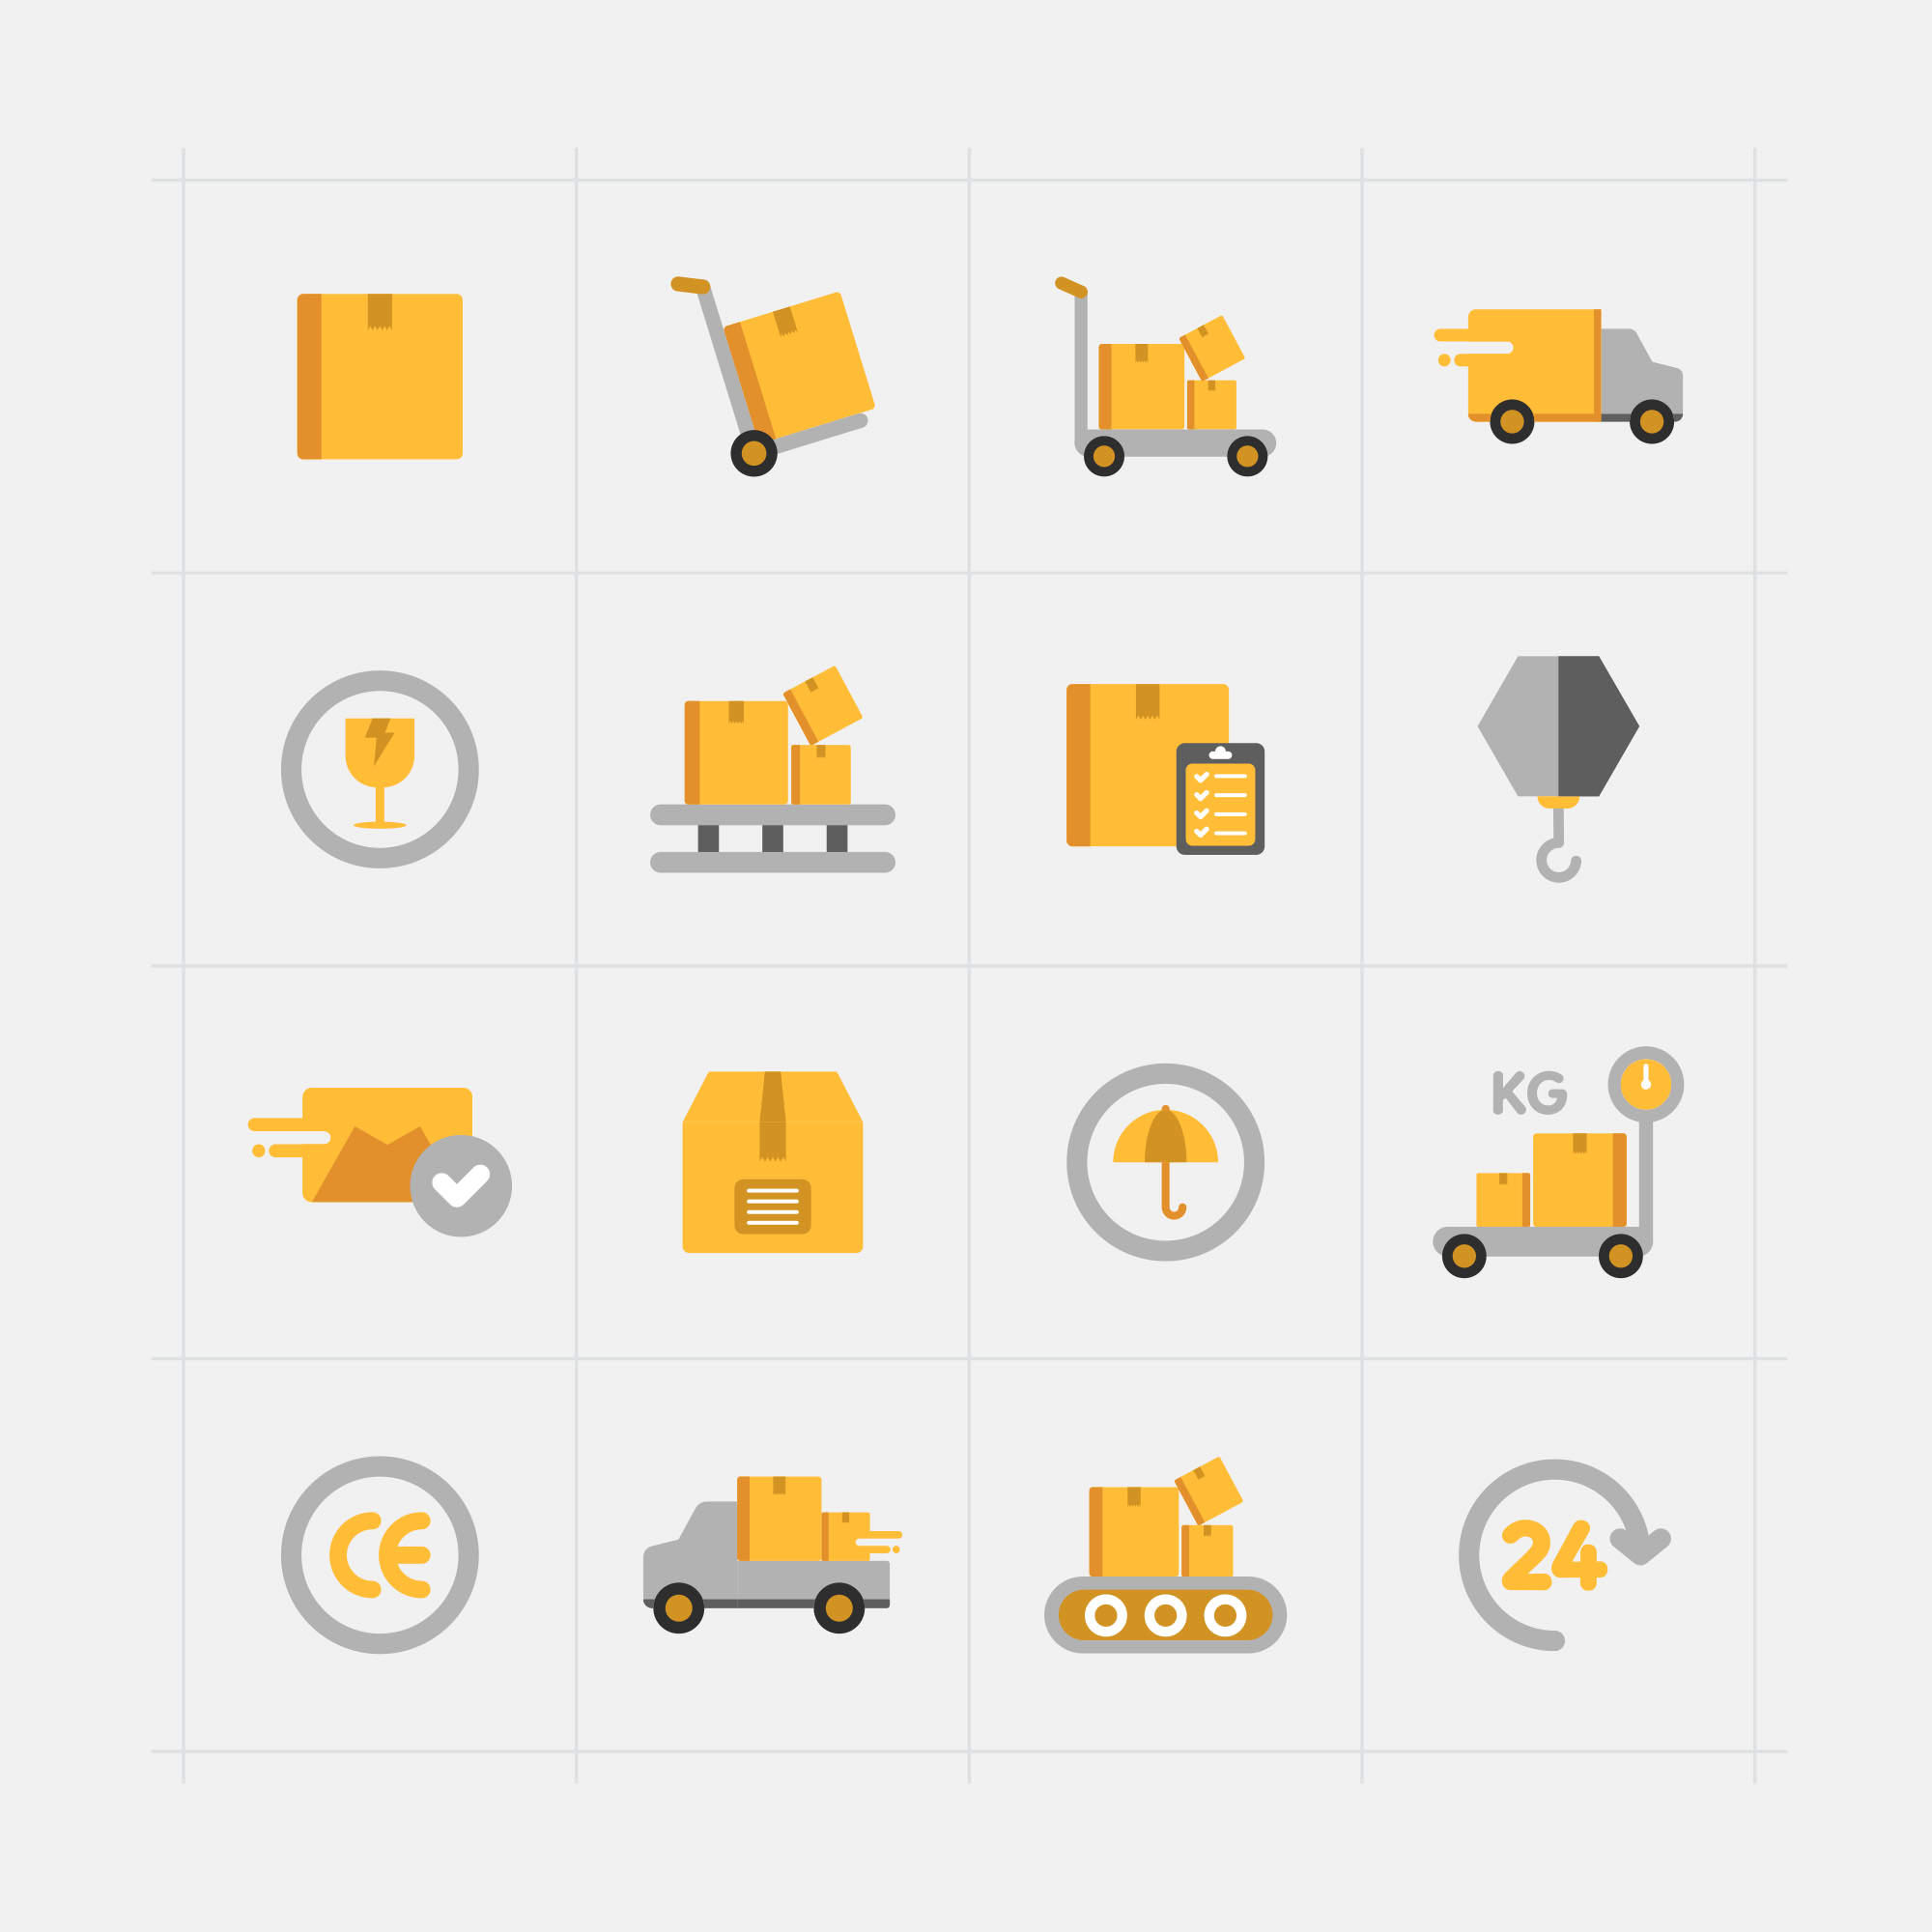 16枚快递配送主题矢量彩色16设计素材网精选图标 16 Delivery Vector Icons插图